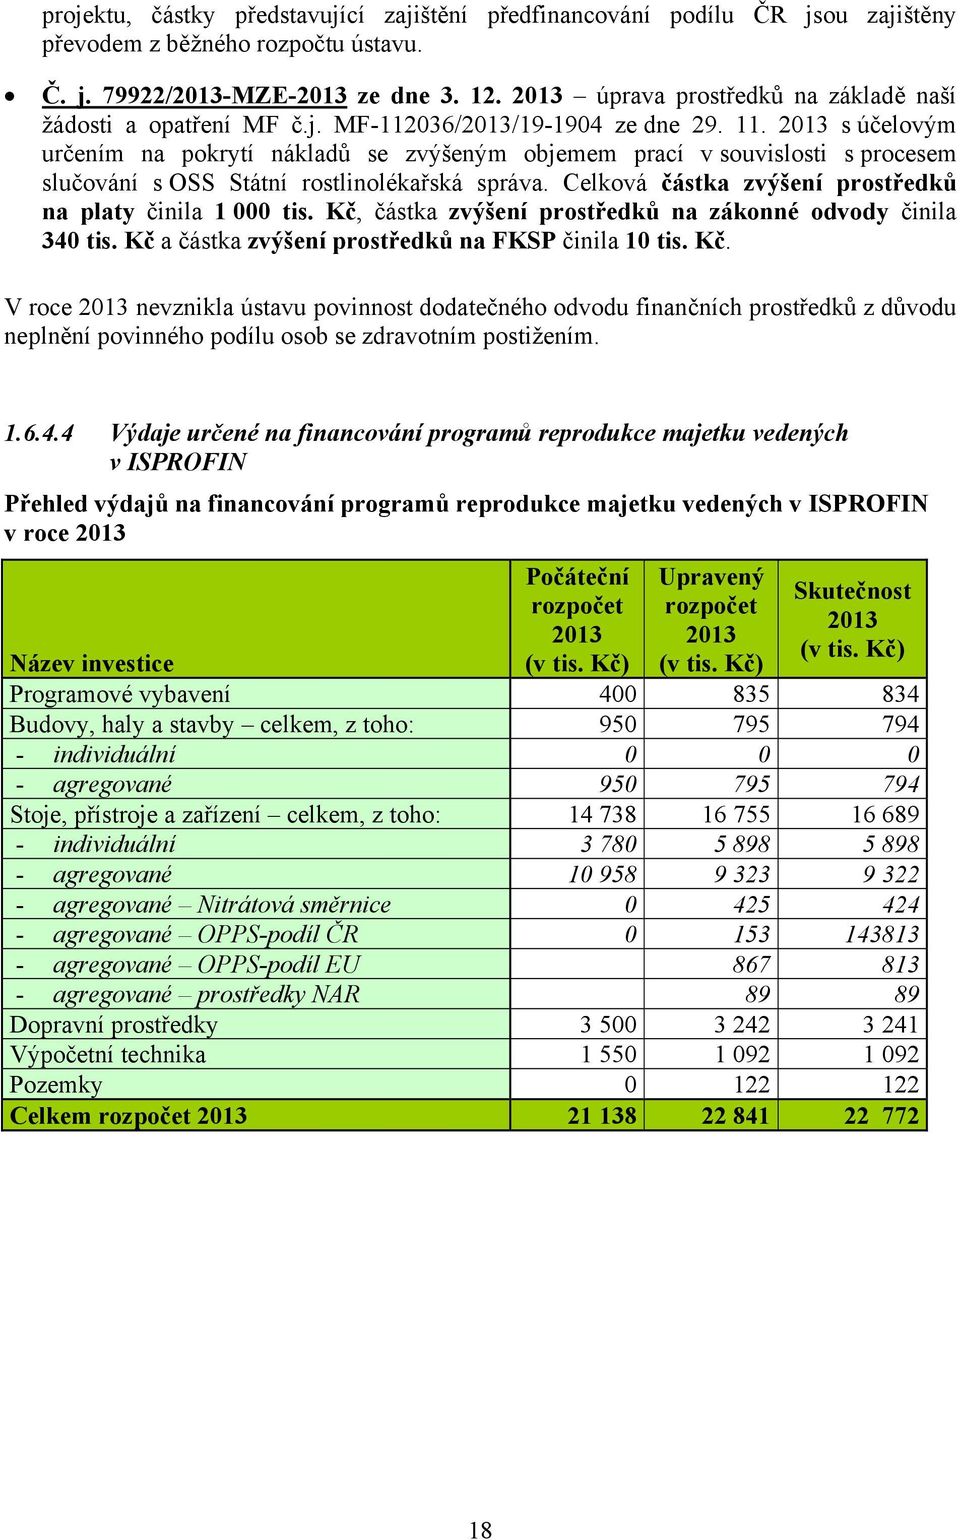 2013 s účelovým určením na pokrytí nákladů se zvýšeným objemem prací v souvislosti s procesem slučování s OSS Státní rostlinolékařská správa.